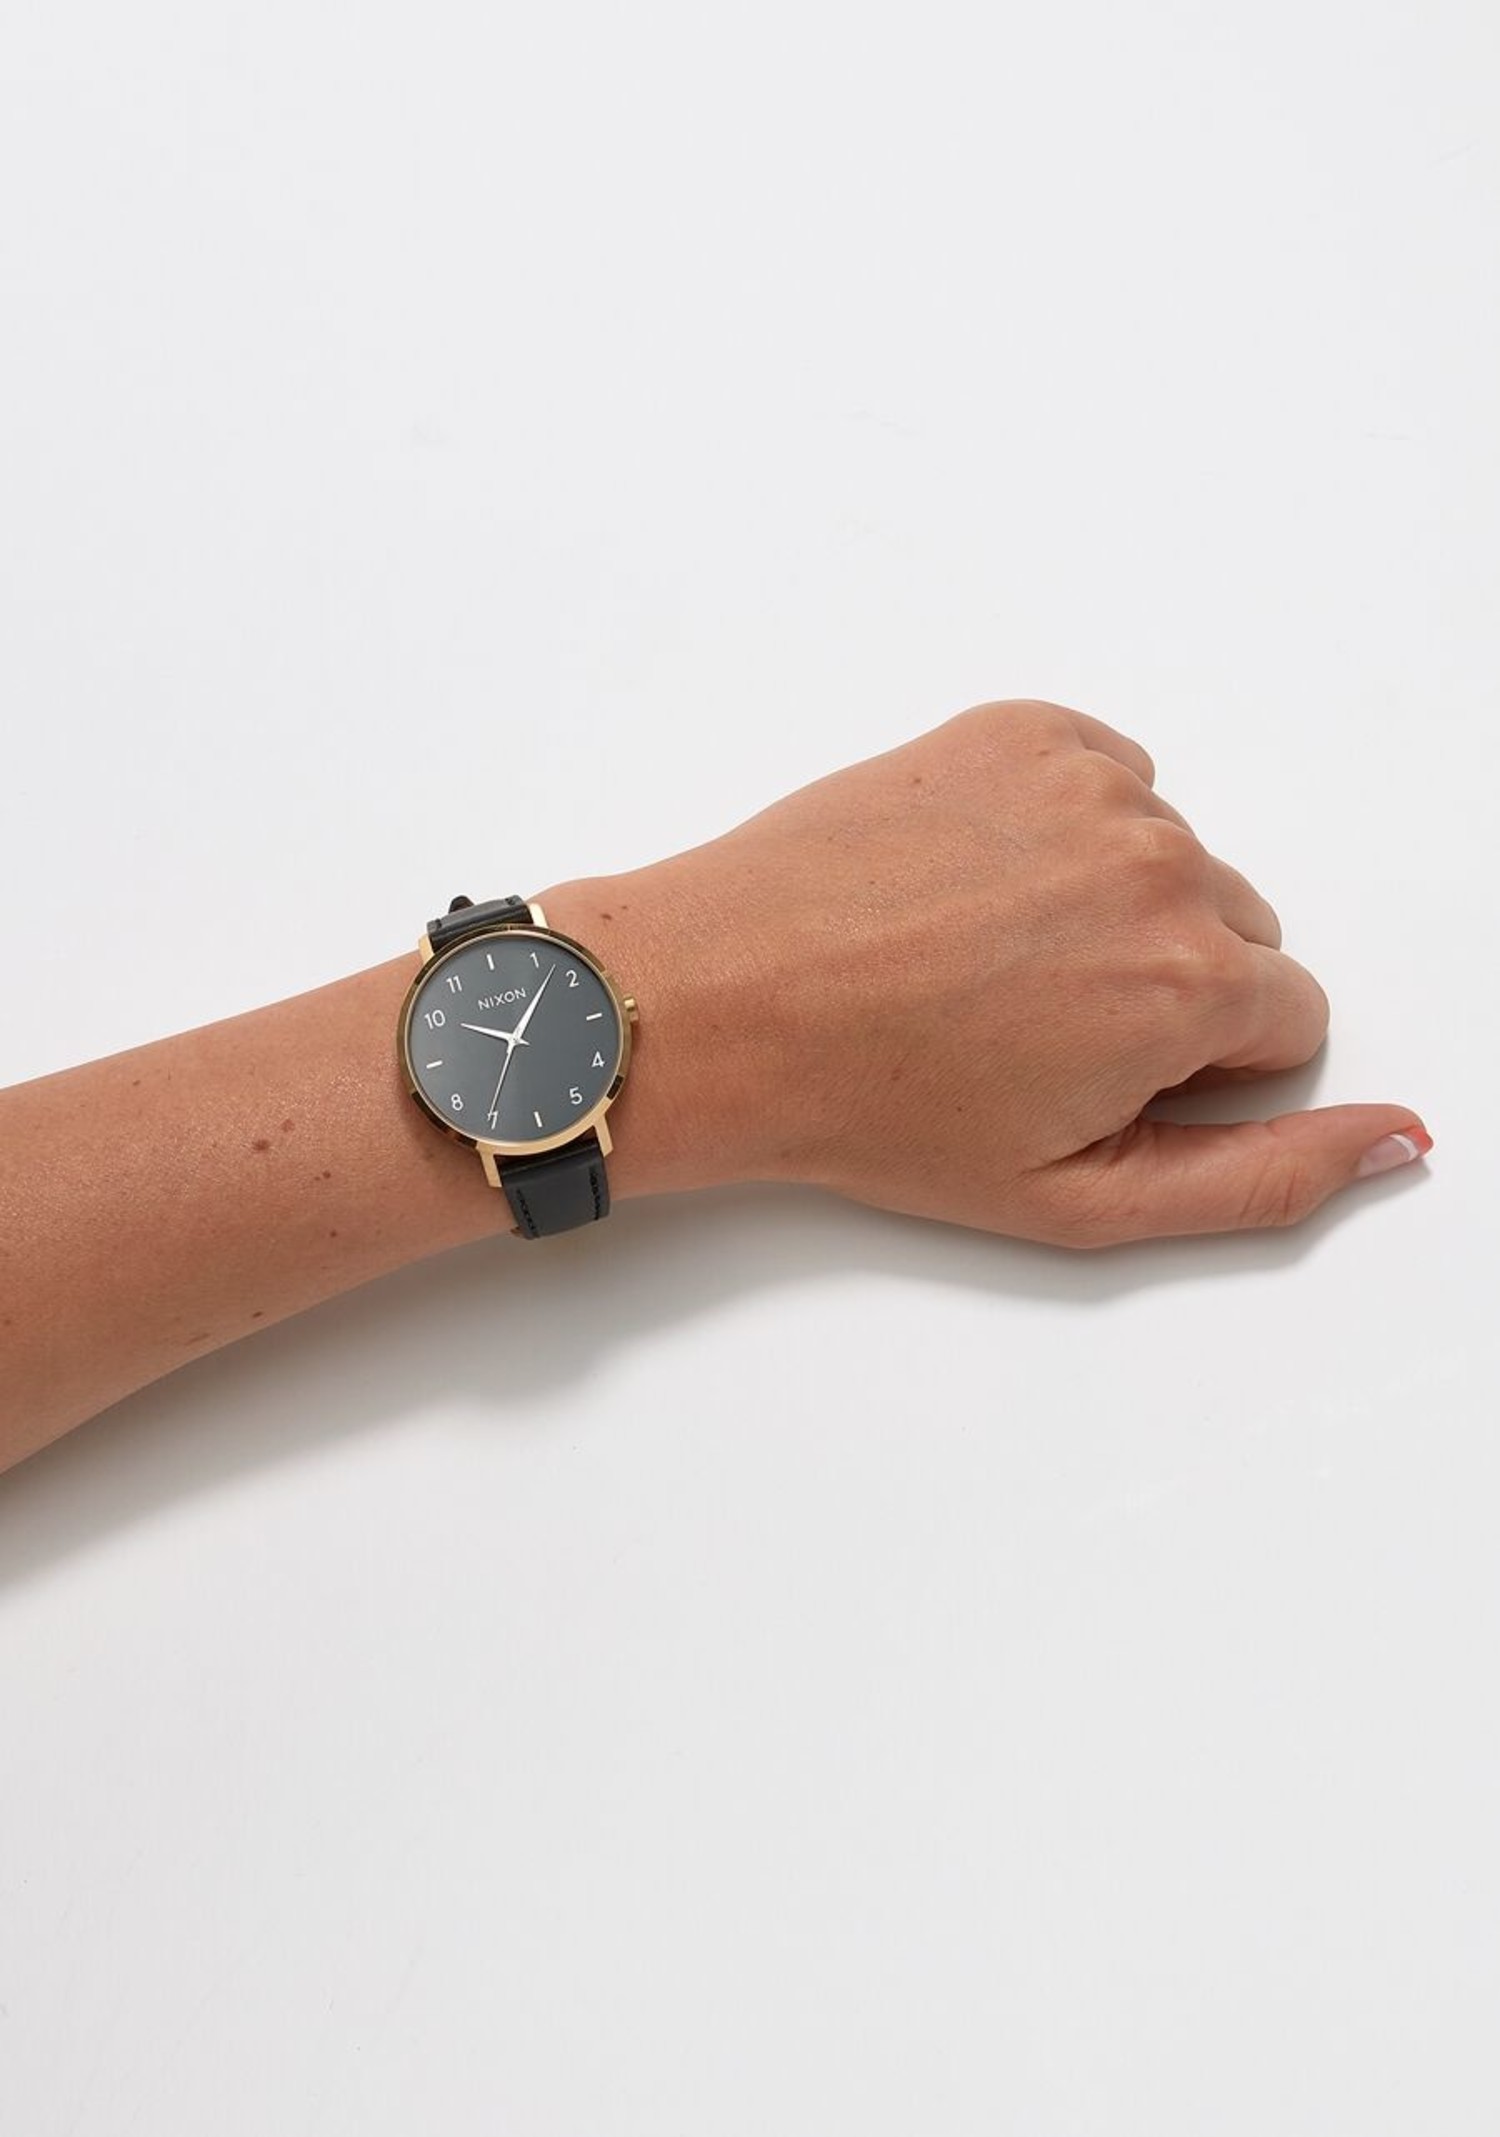 NIXON ARROW LEATHER 【新品未使用】 - 腕時計